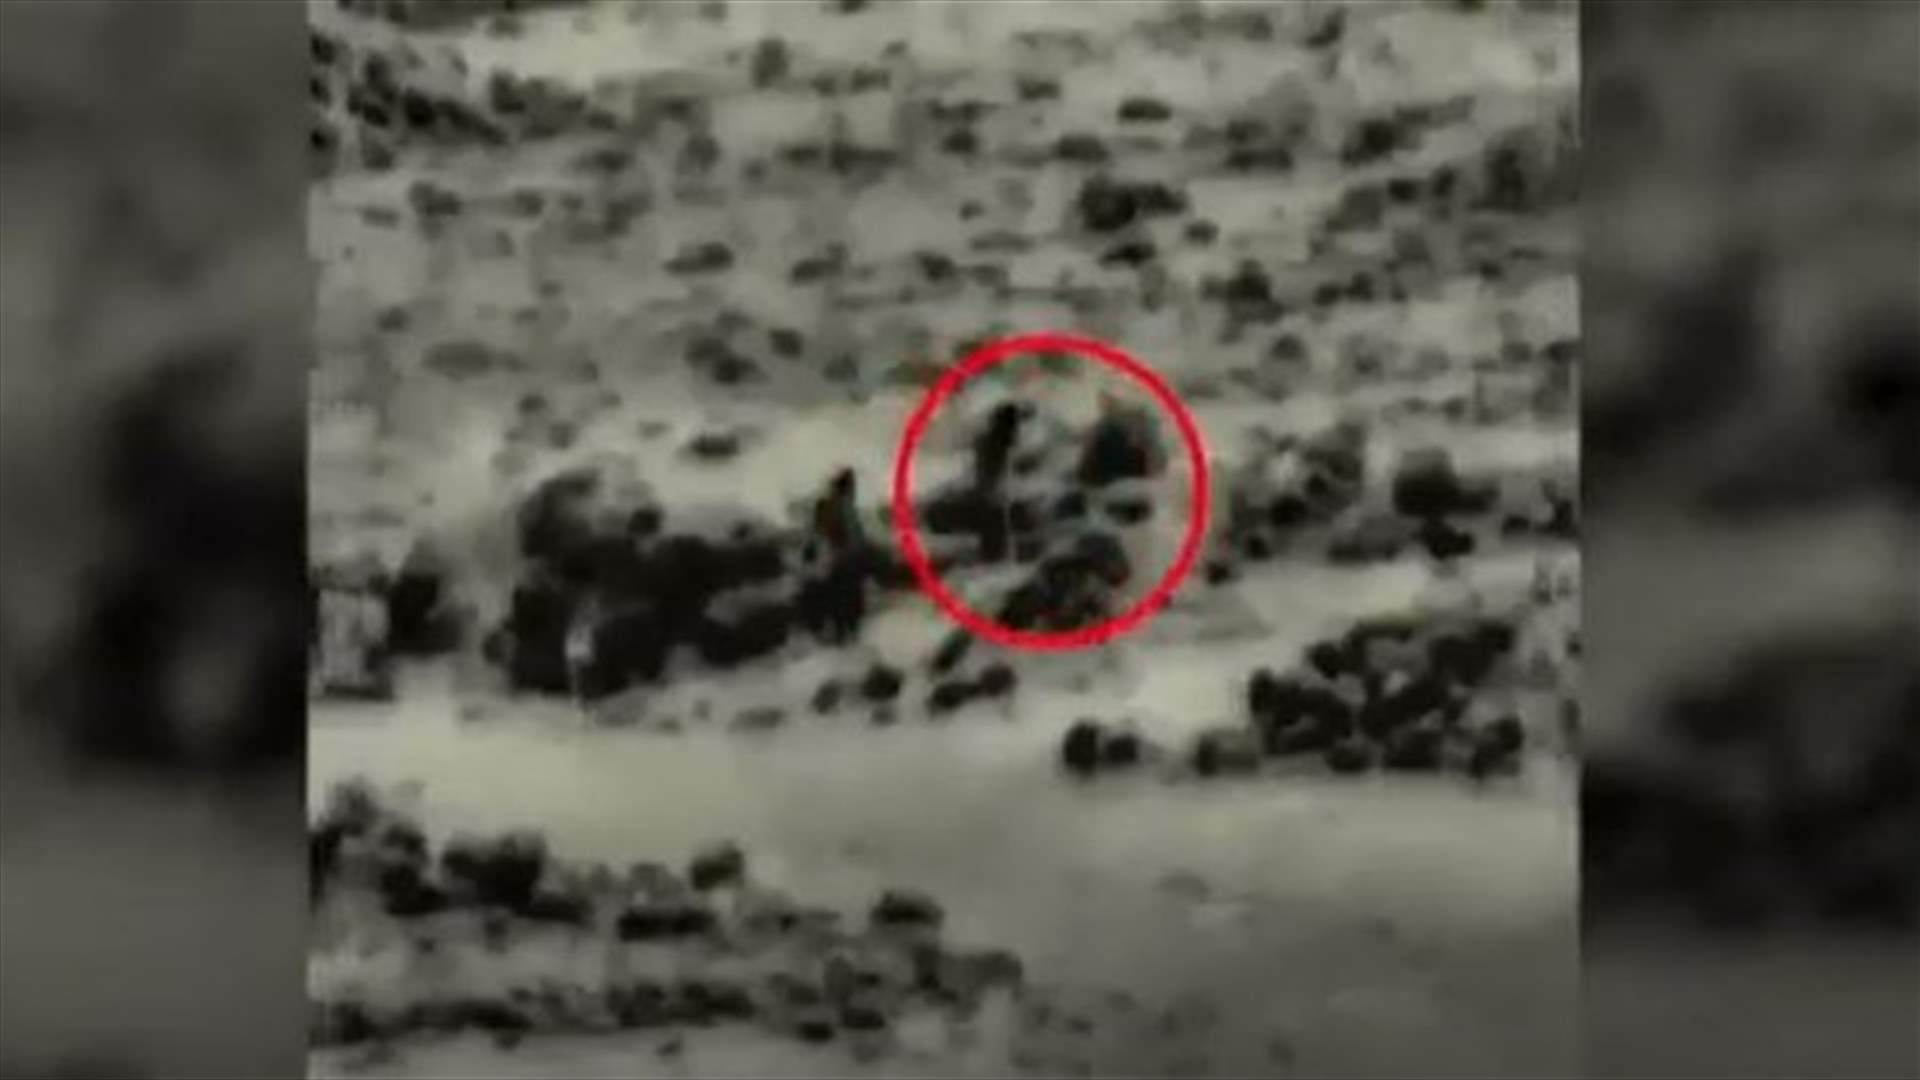 لحظة رصد الجيش الاسرائيلي ٤ عناصر زرعوا عبوة ناسفة قرب موقع عسكري على الحدود مع سوريا (فيديو)